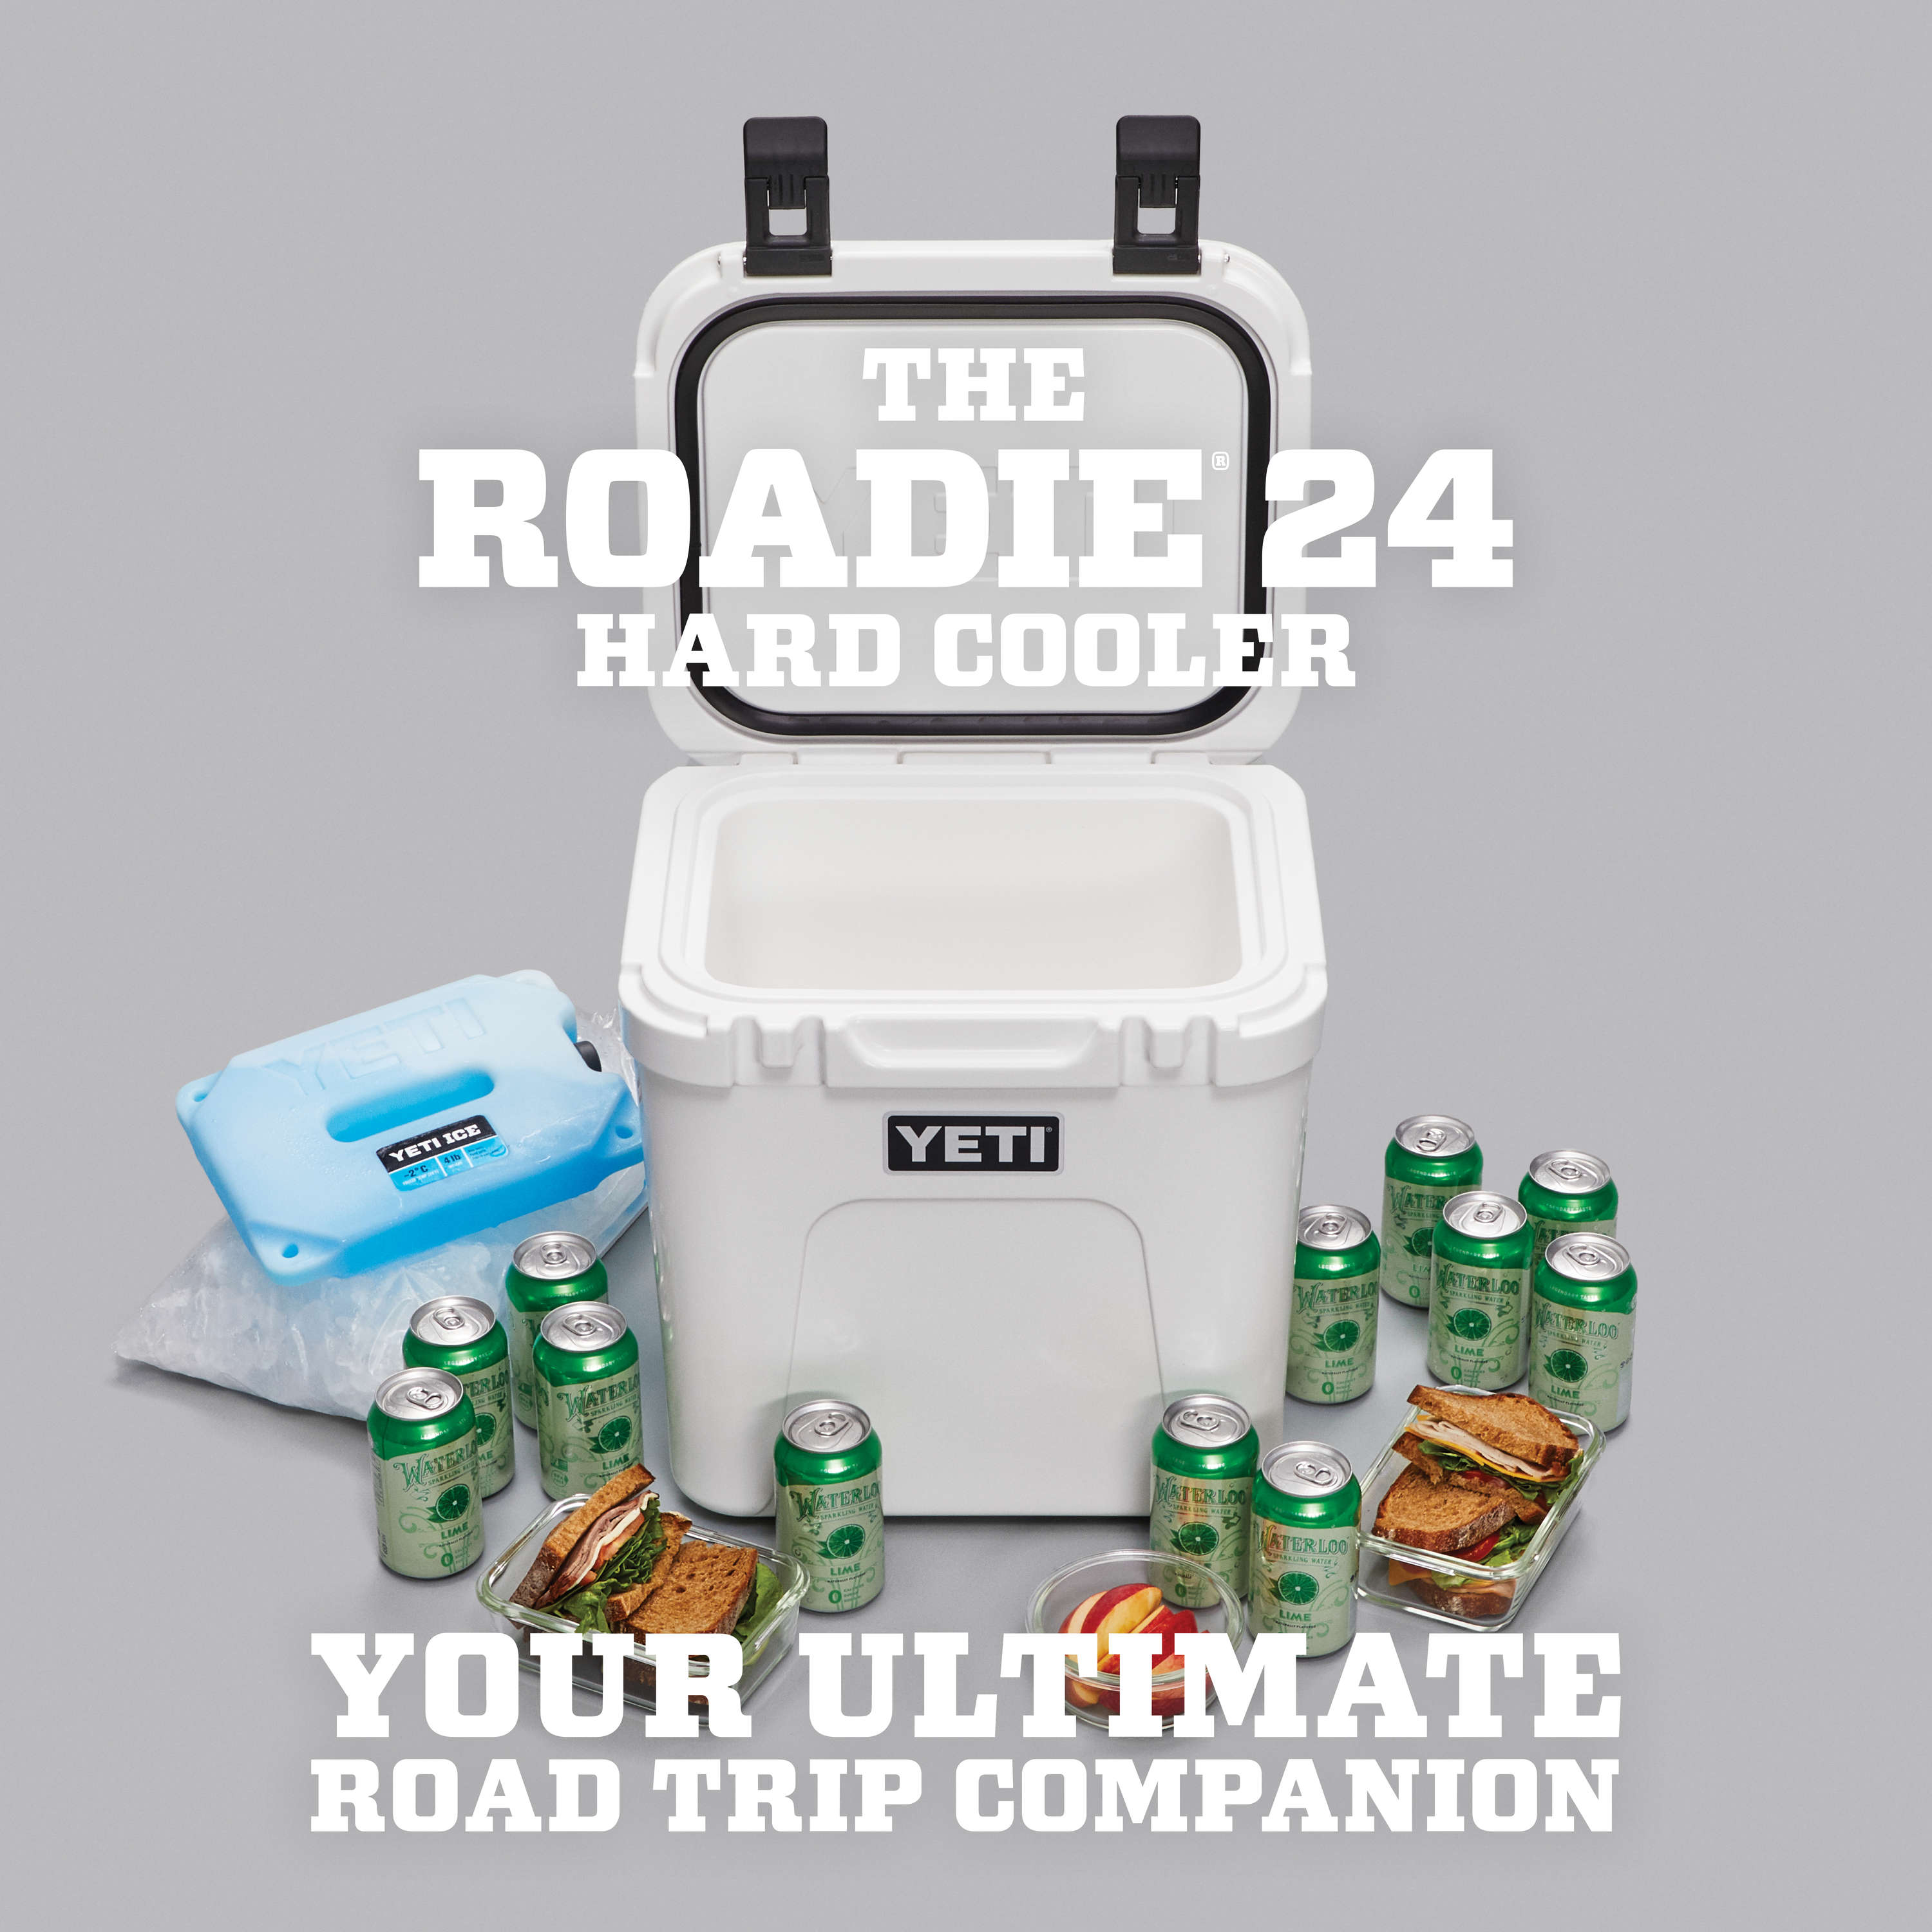 Roadie® 24 Marine Cooler